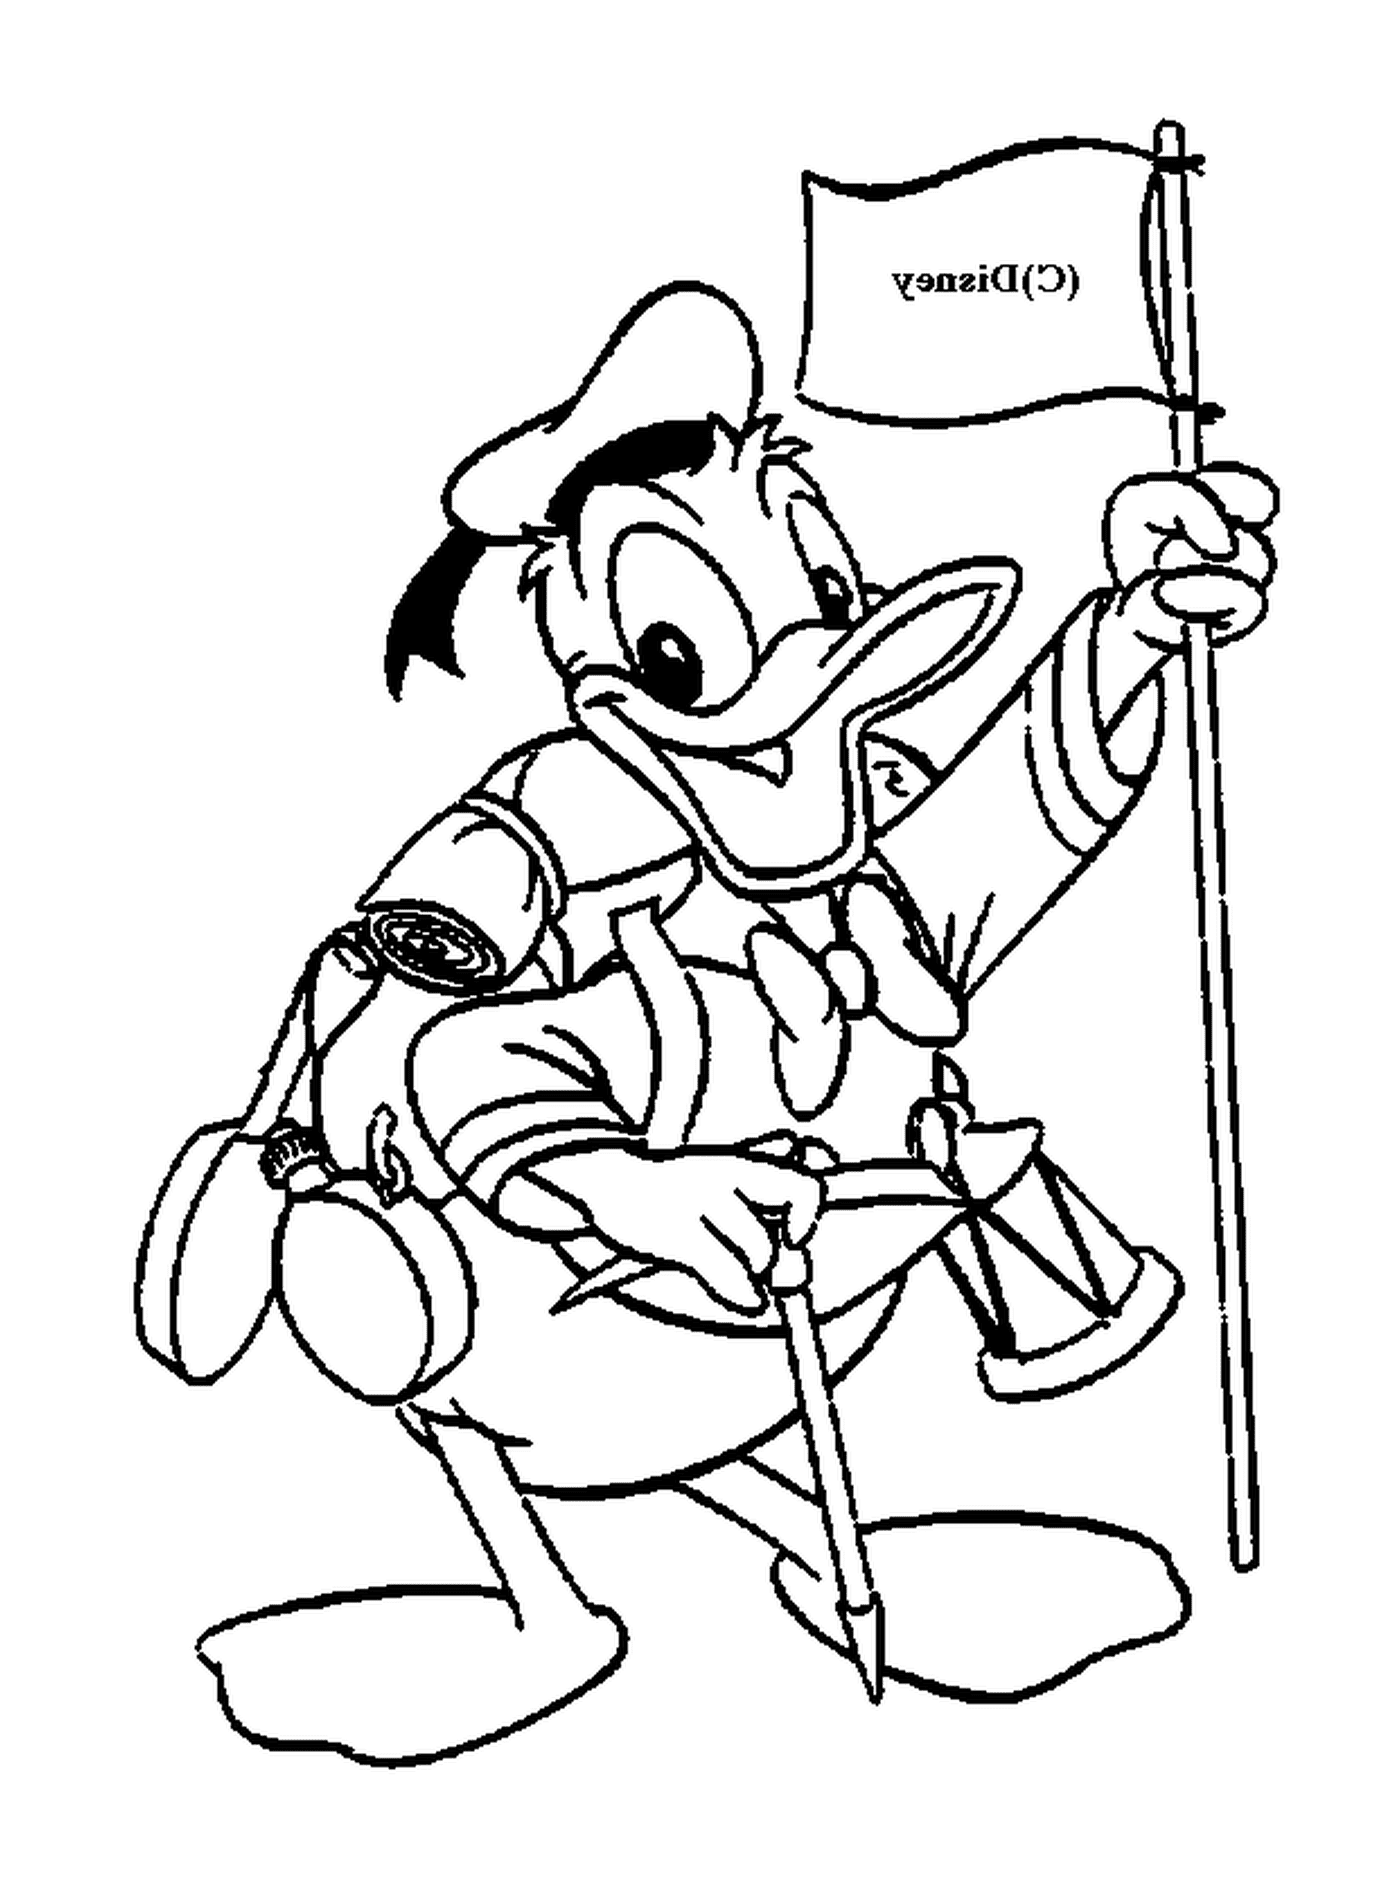  Donald in costume da scout, orgoglioso della sua bandiera 